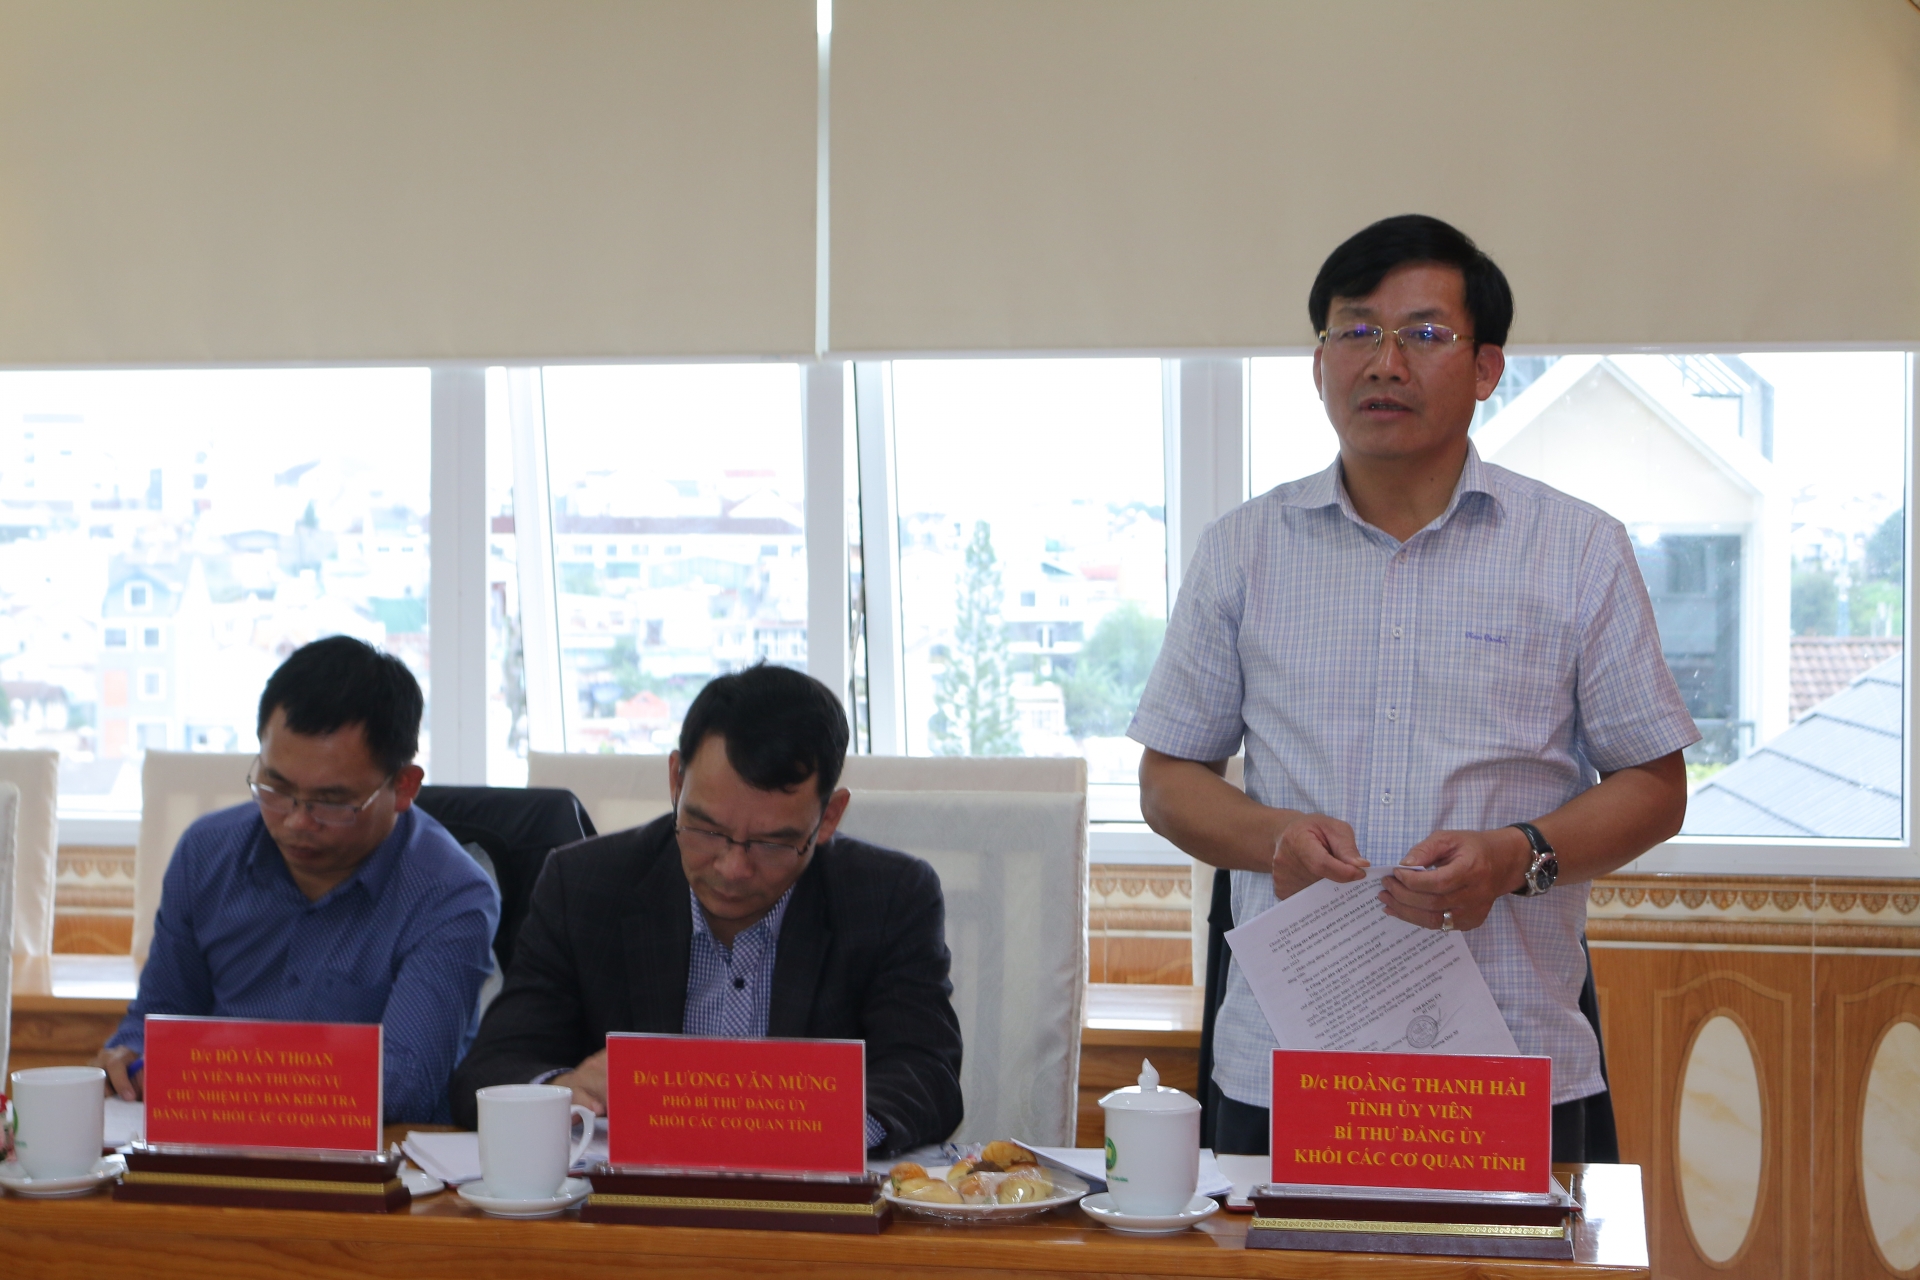 Đồng chí Hoàng Thanh Hải – Bí thư Đảng ủy Khối Các Cơ quan tỉnh kết luận buổi làm việc

